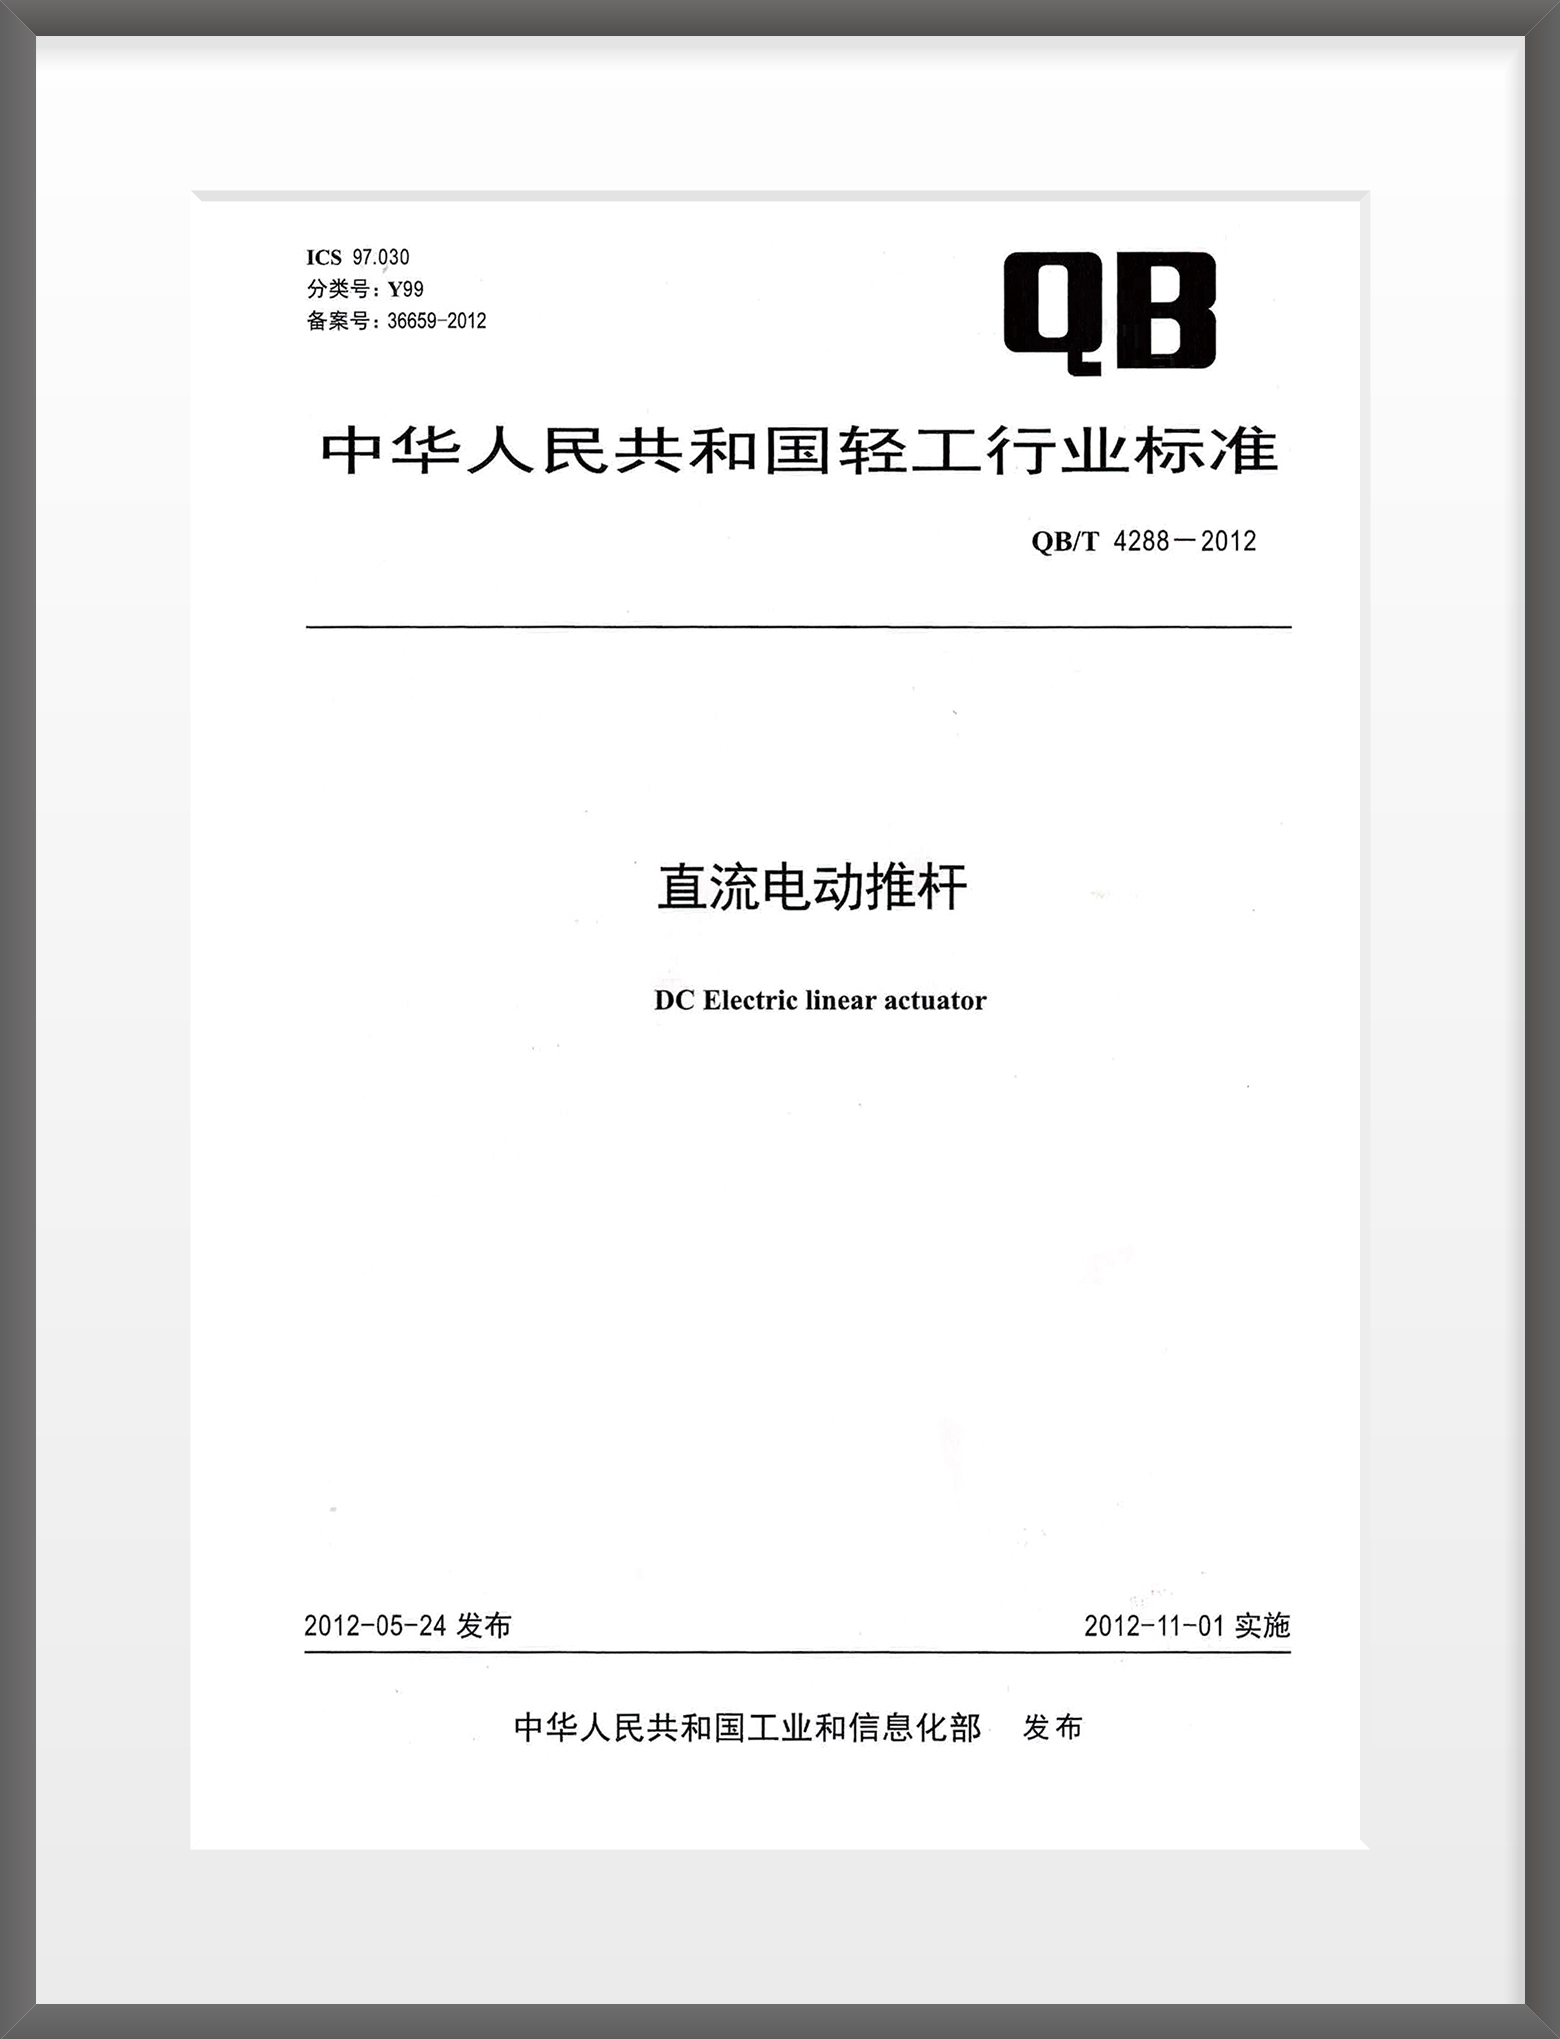 2008年 起草中国《直流电动推杆》行业标准